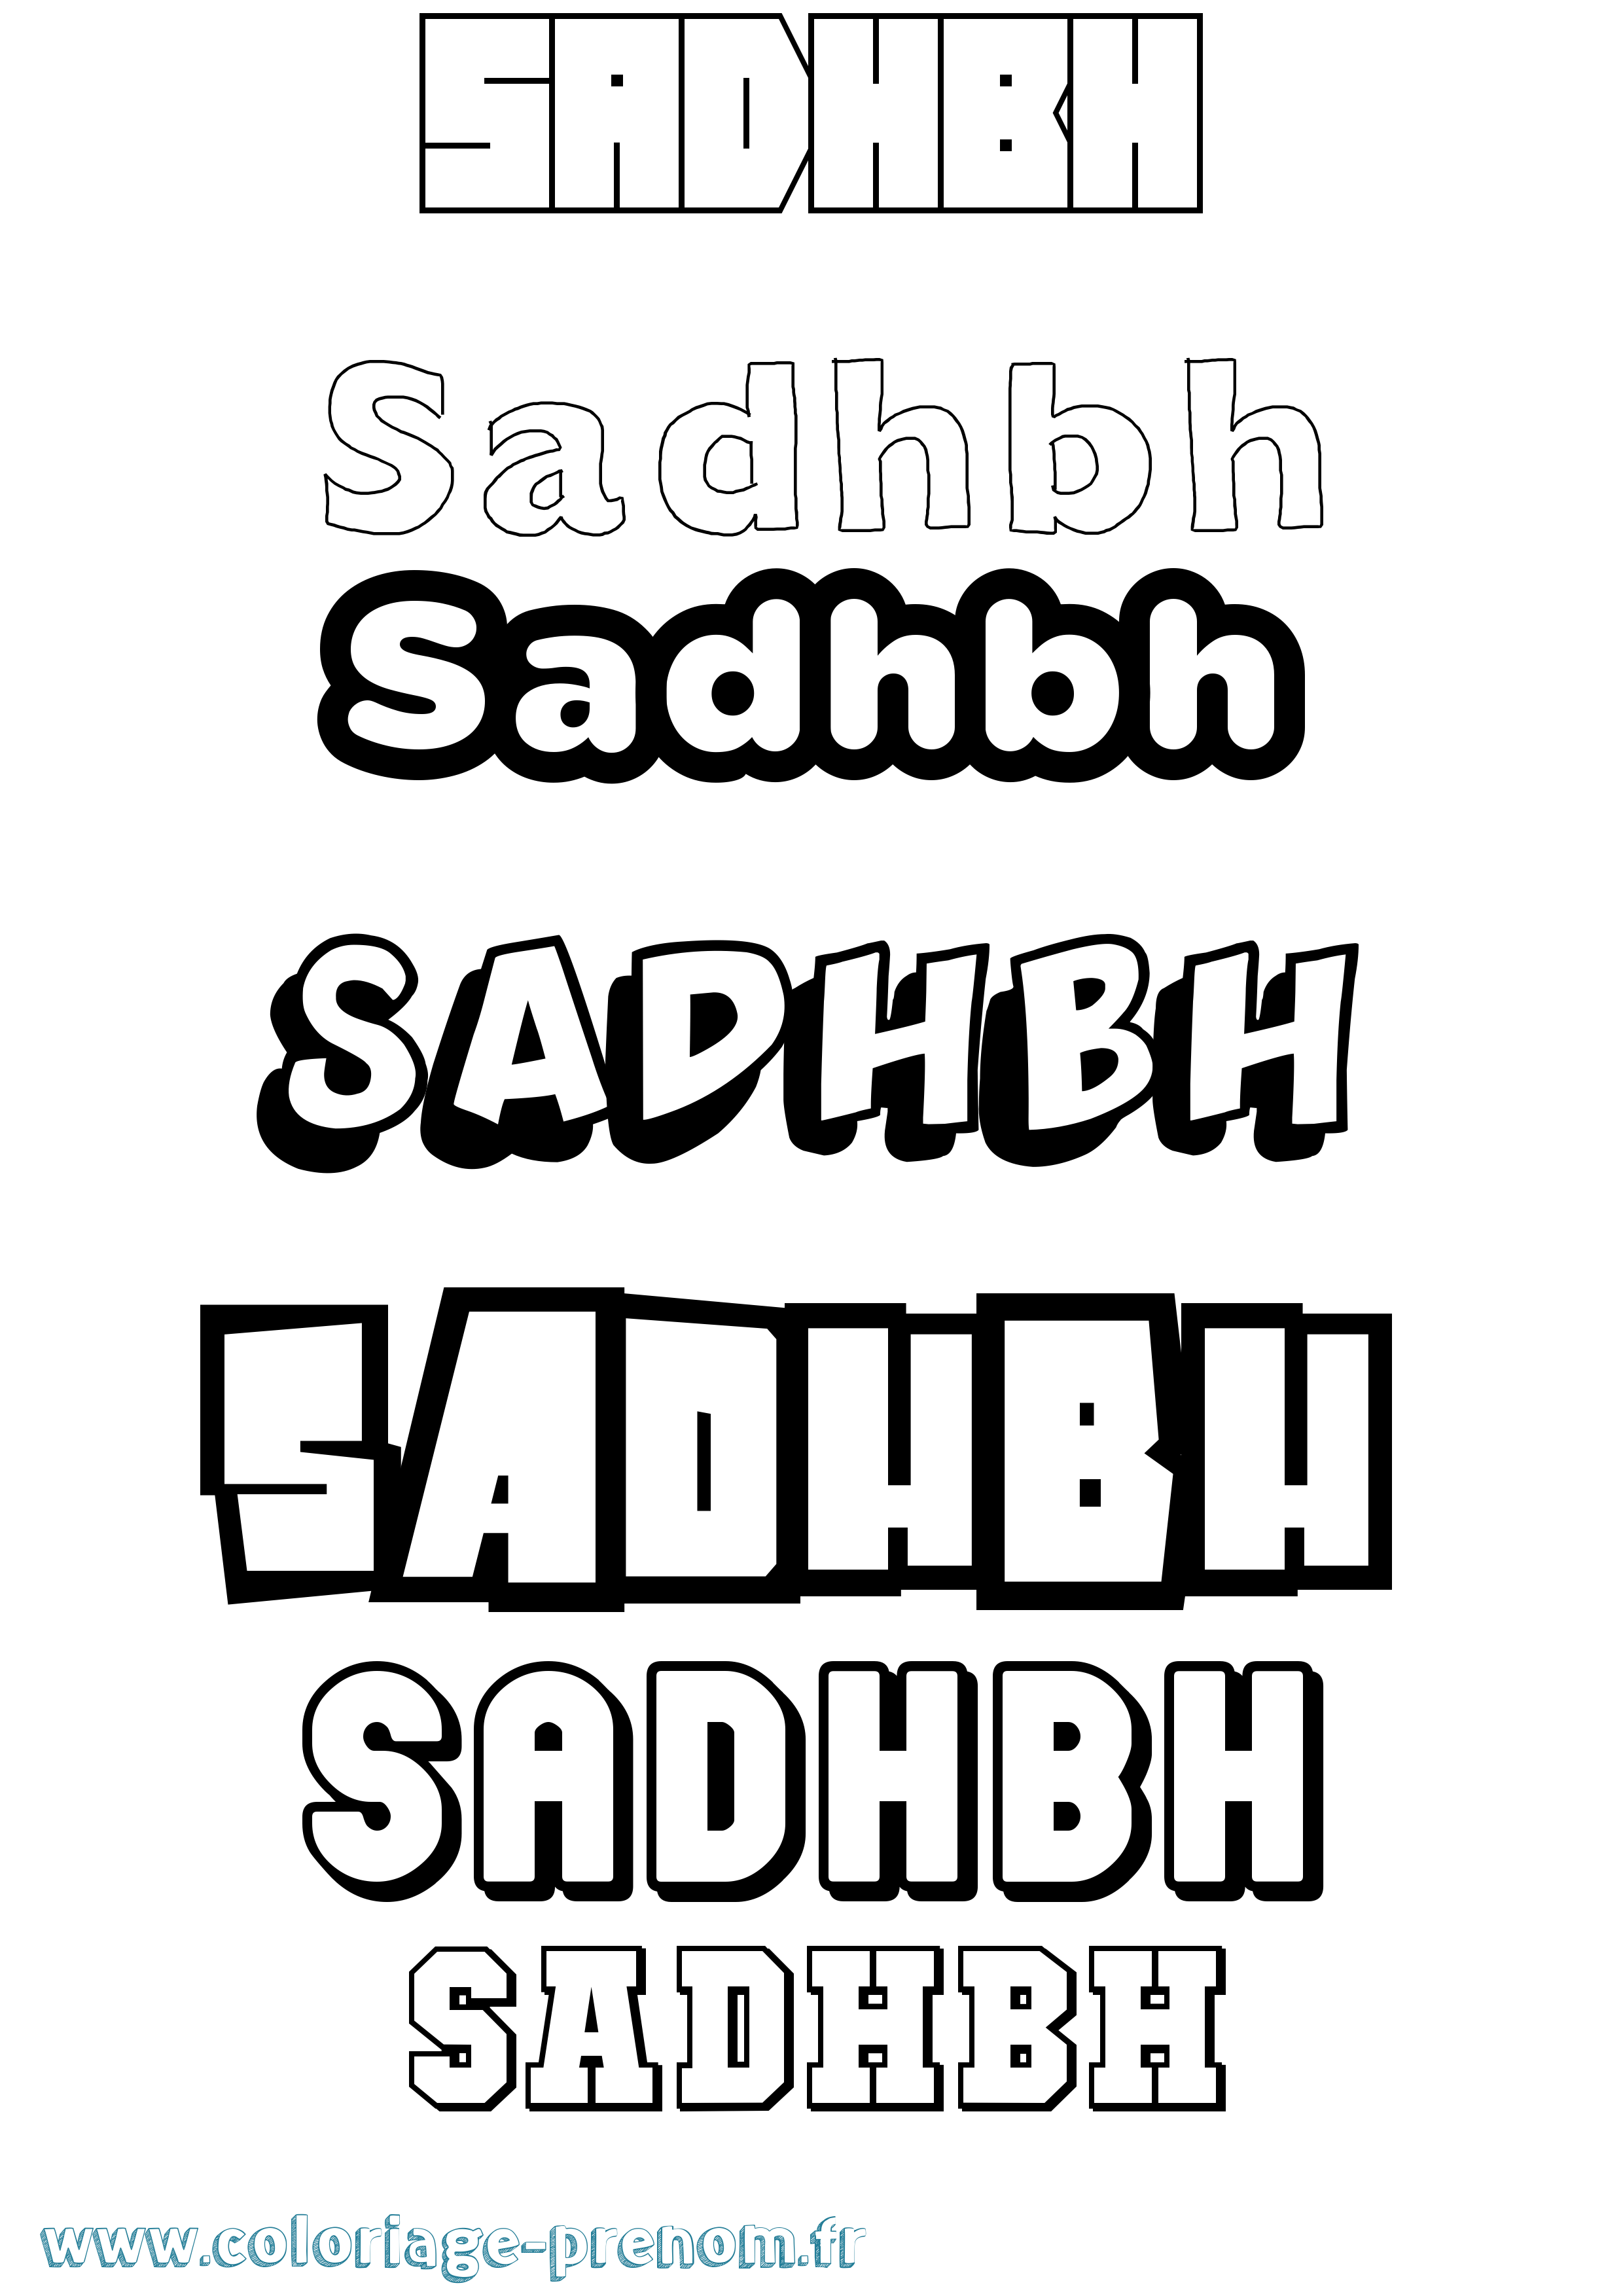 Coloriage prénom Sadhbh Simple